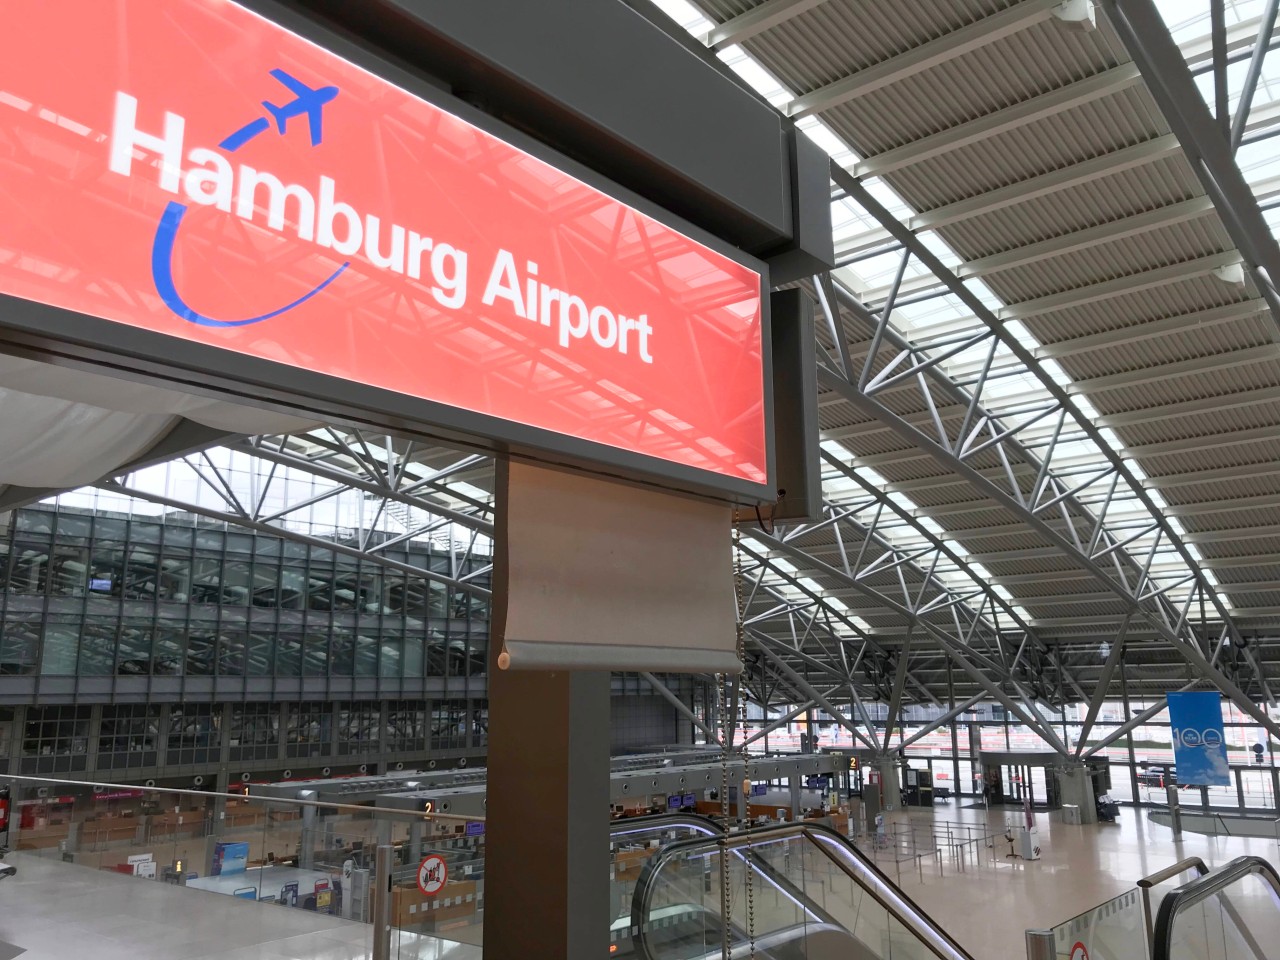 Urlauber müssen sich am Flughafen in Hamburg auf etwas gefasst machen! (Symbolbild)